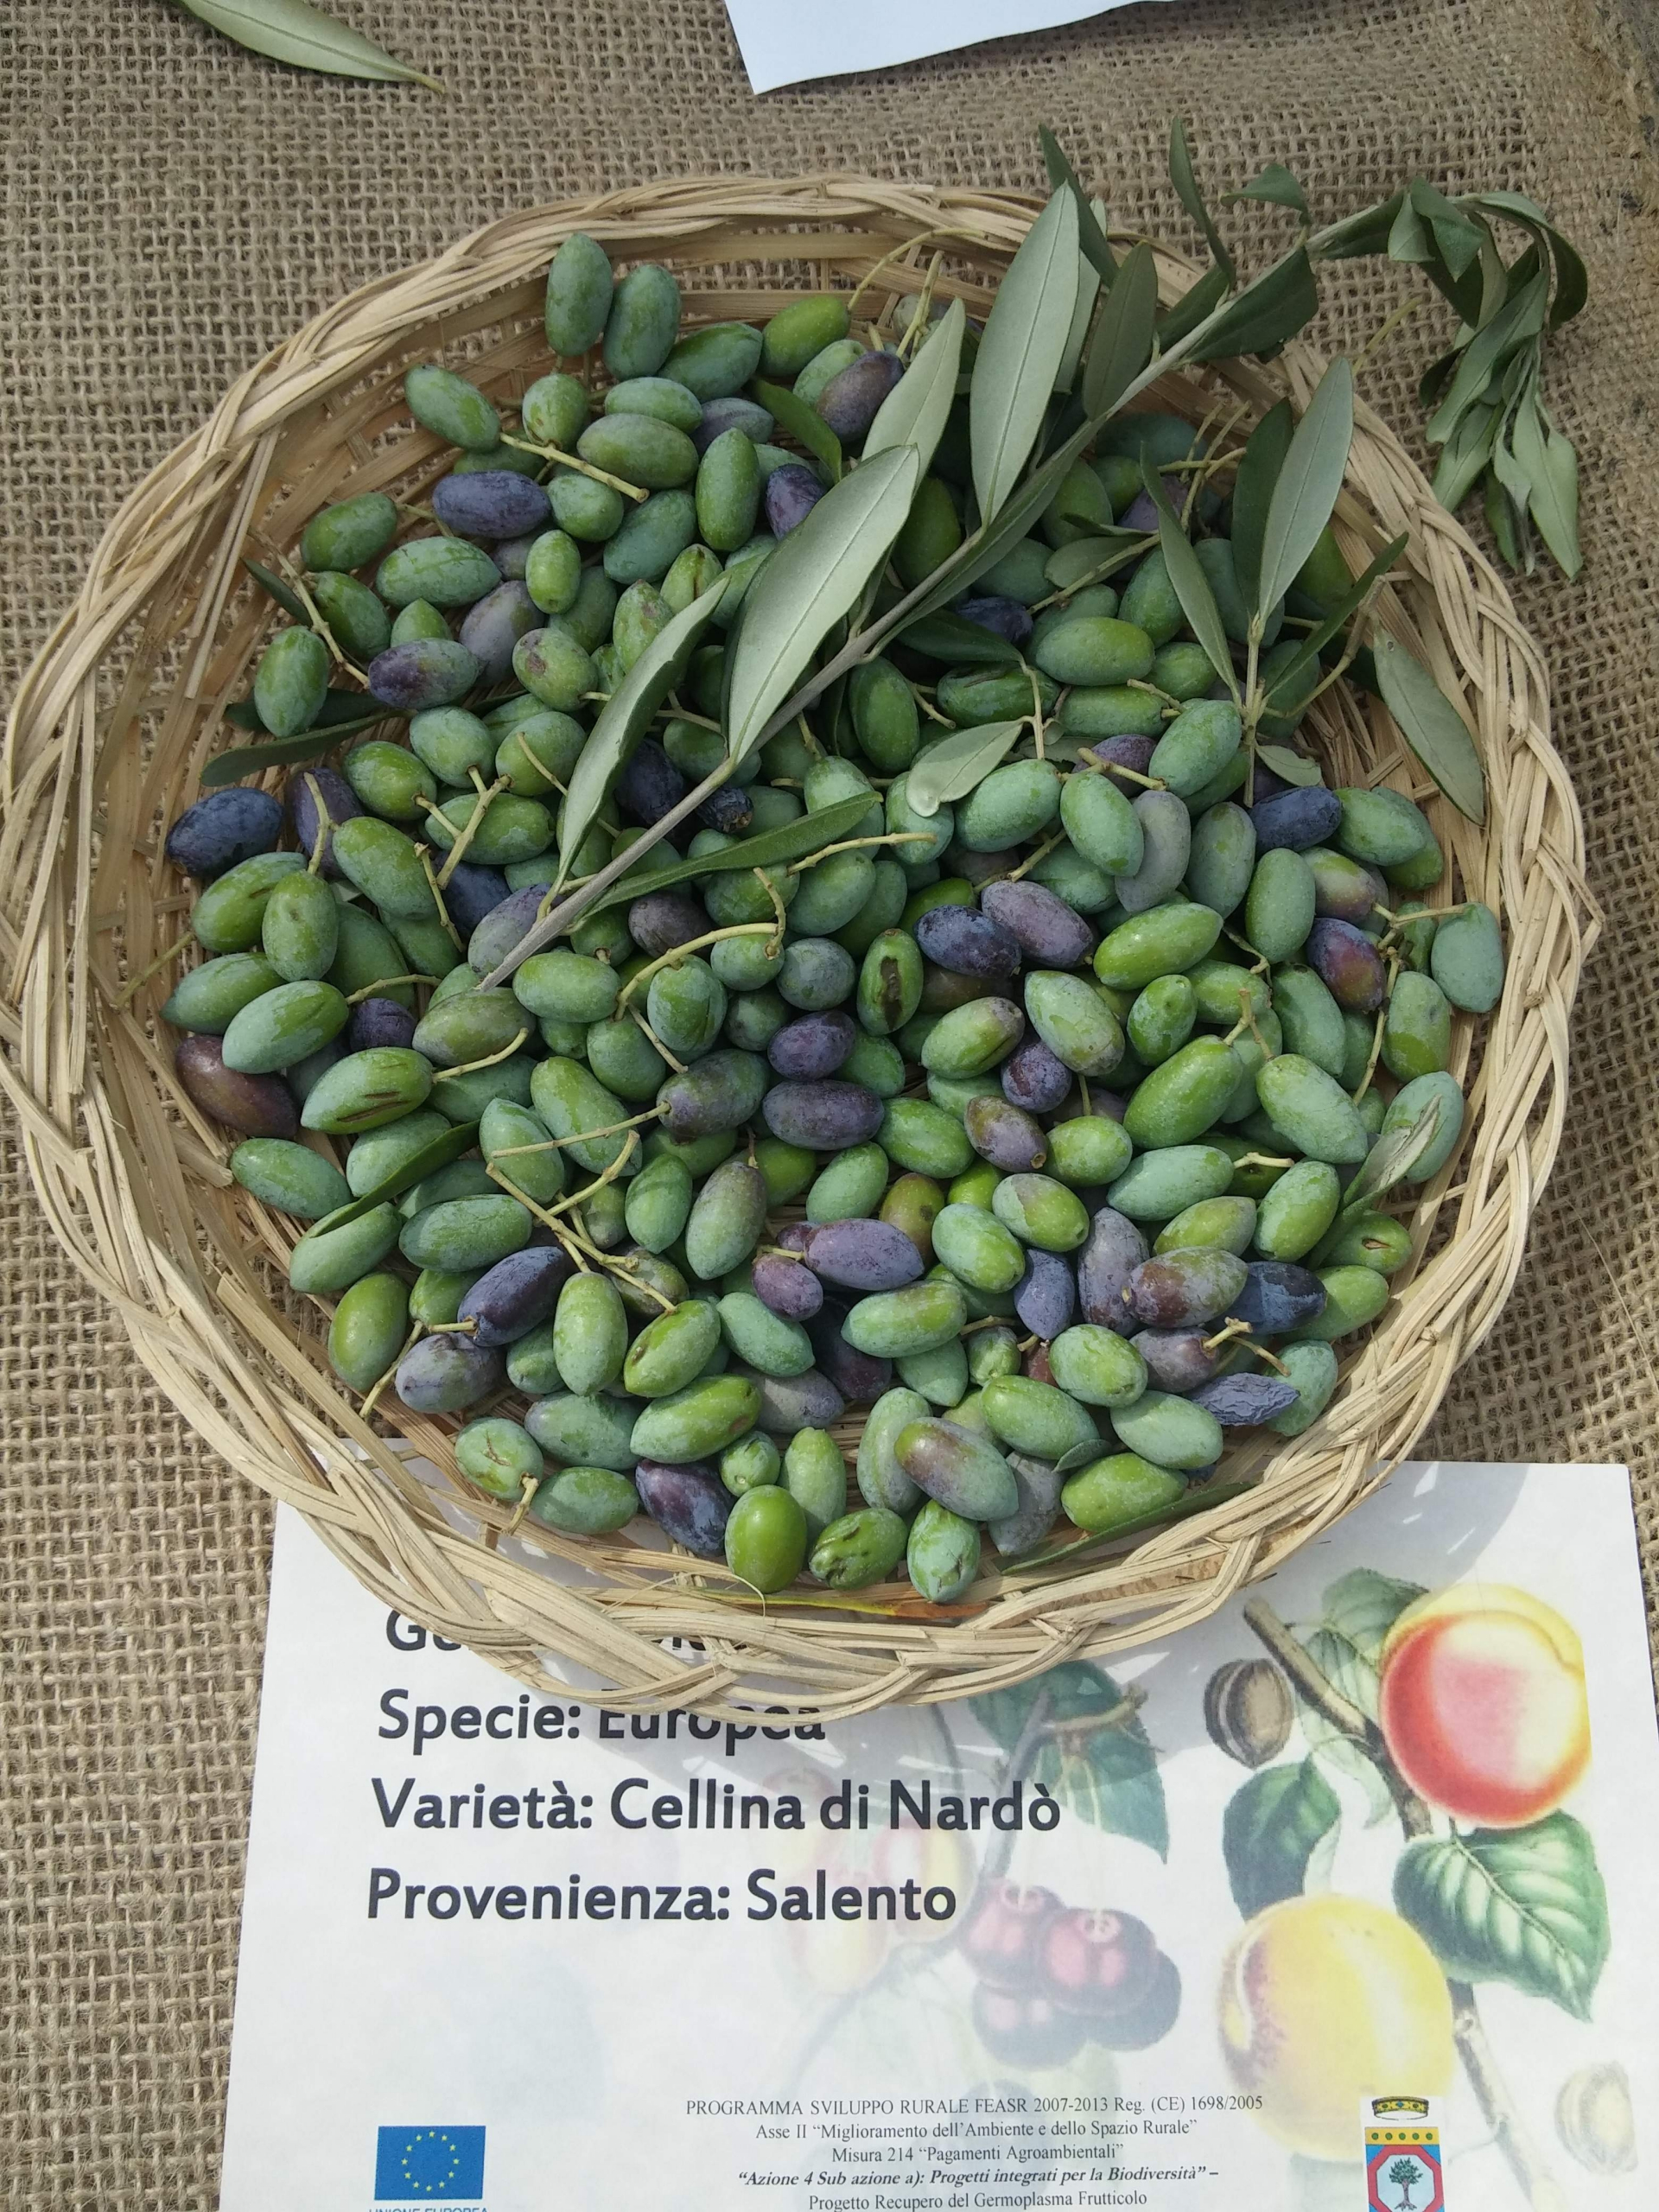 Olives on display